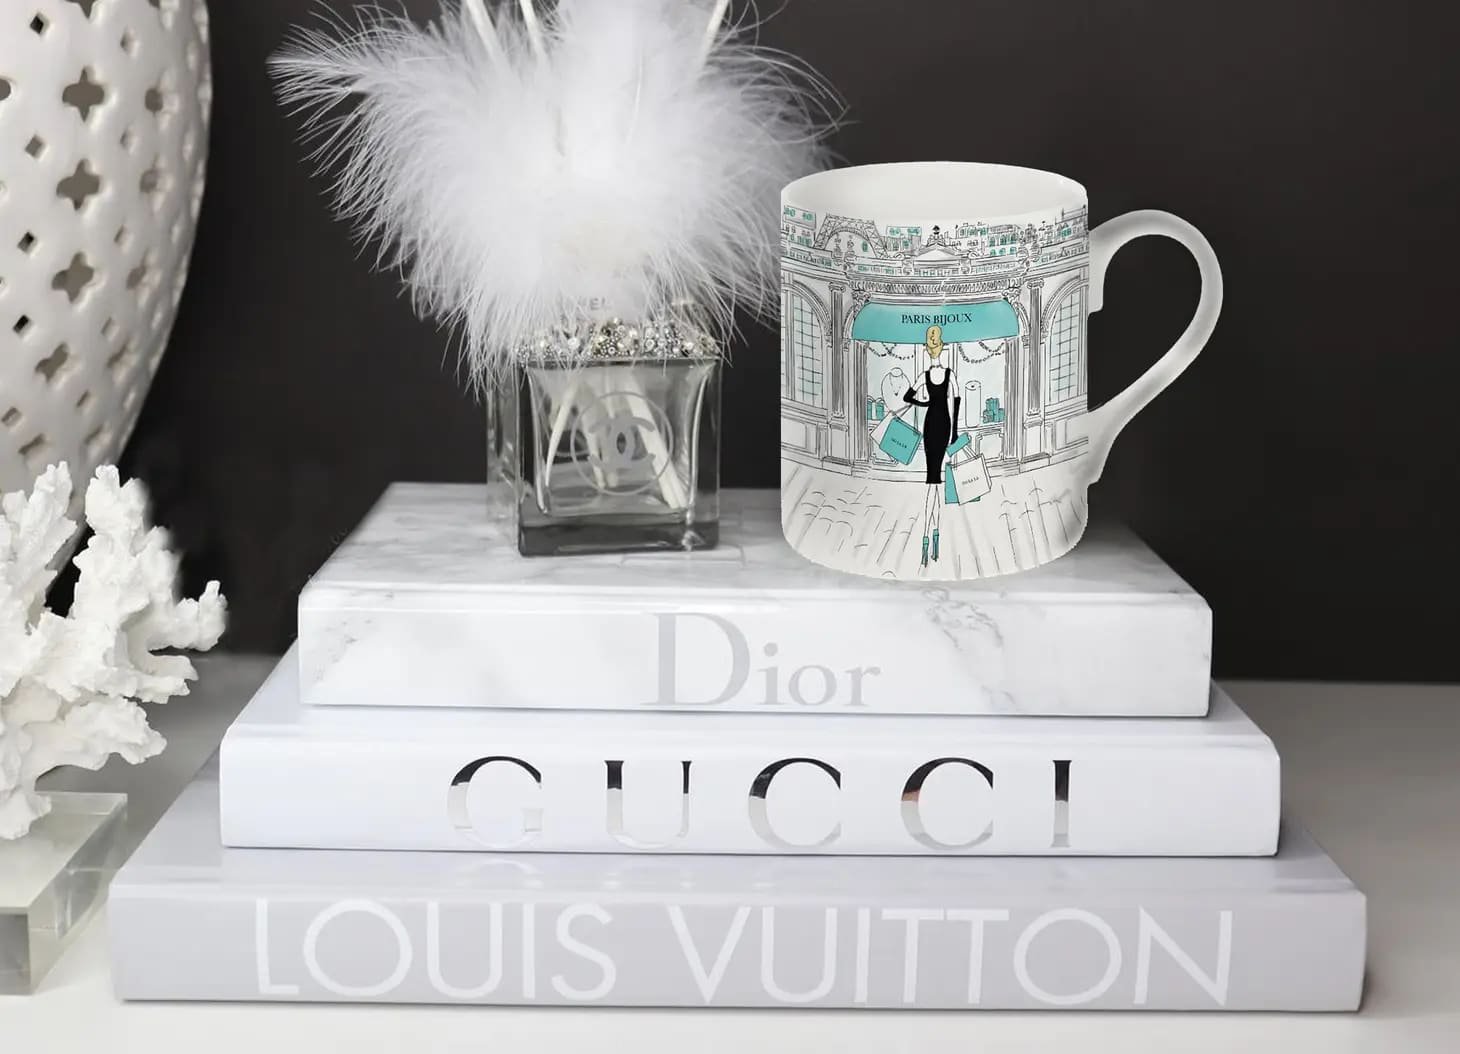 Louis Vuitton Portable Coffee Cup